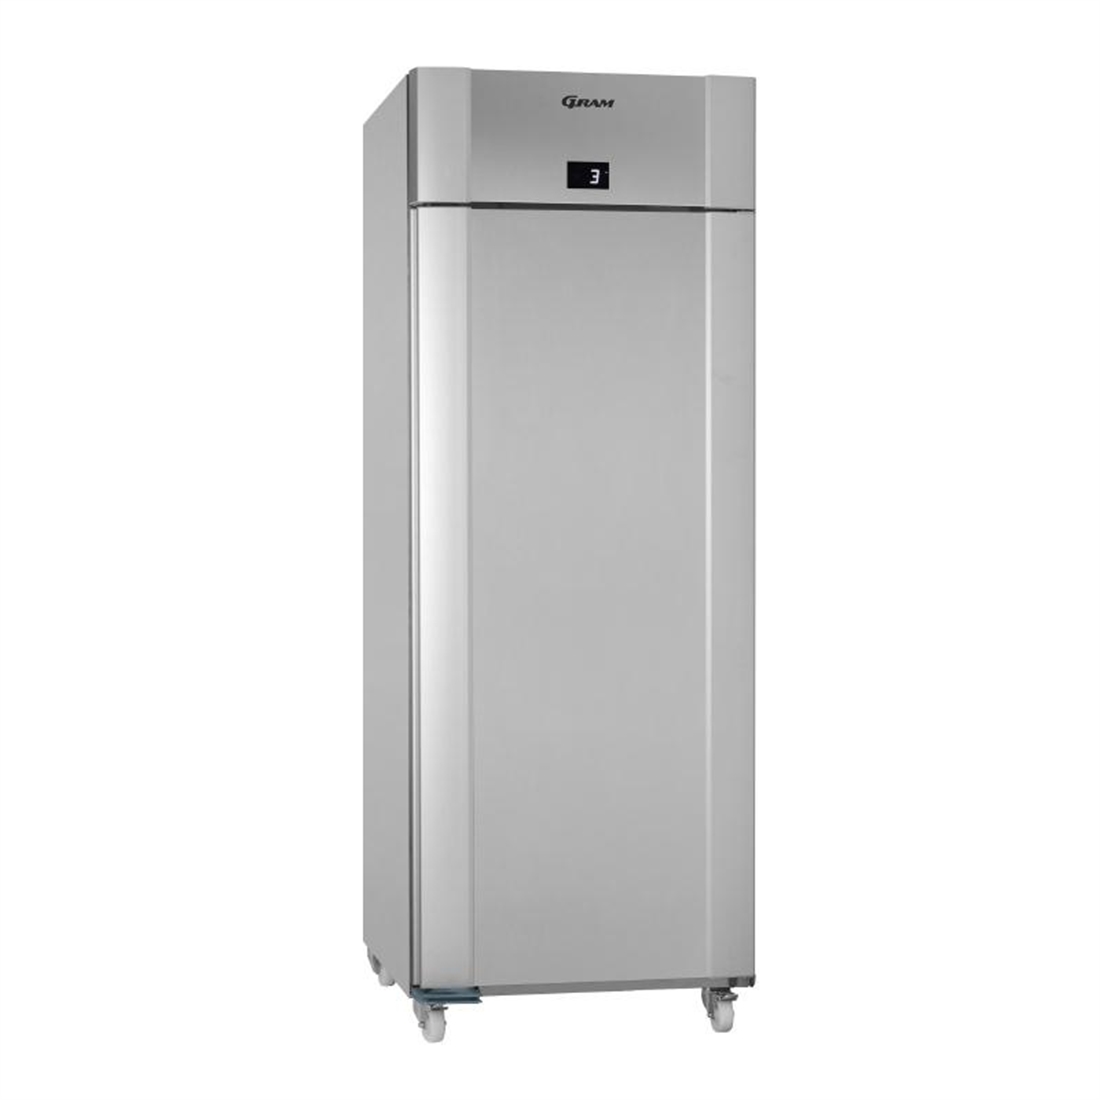 Gram Eco Twin 1 Door 601Ltr Freezer Vario Silver F 82 RAG C1 4N